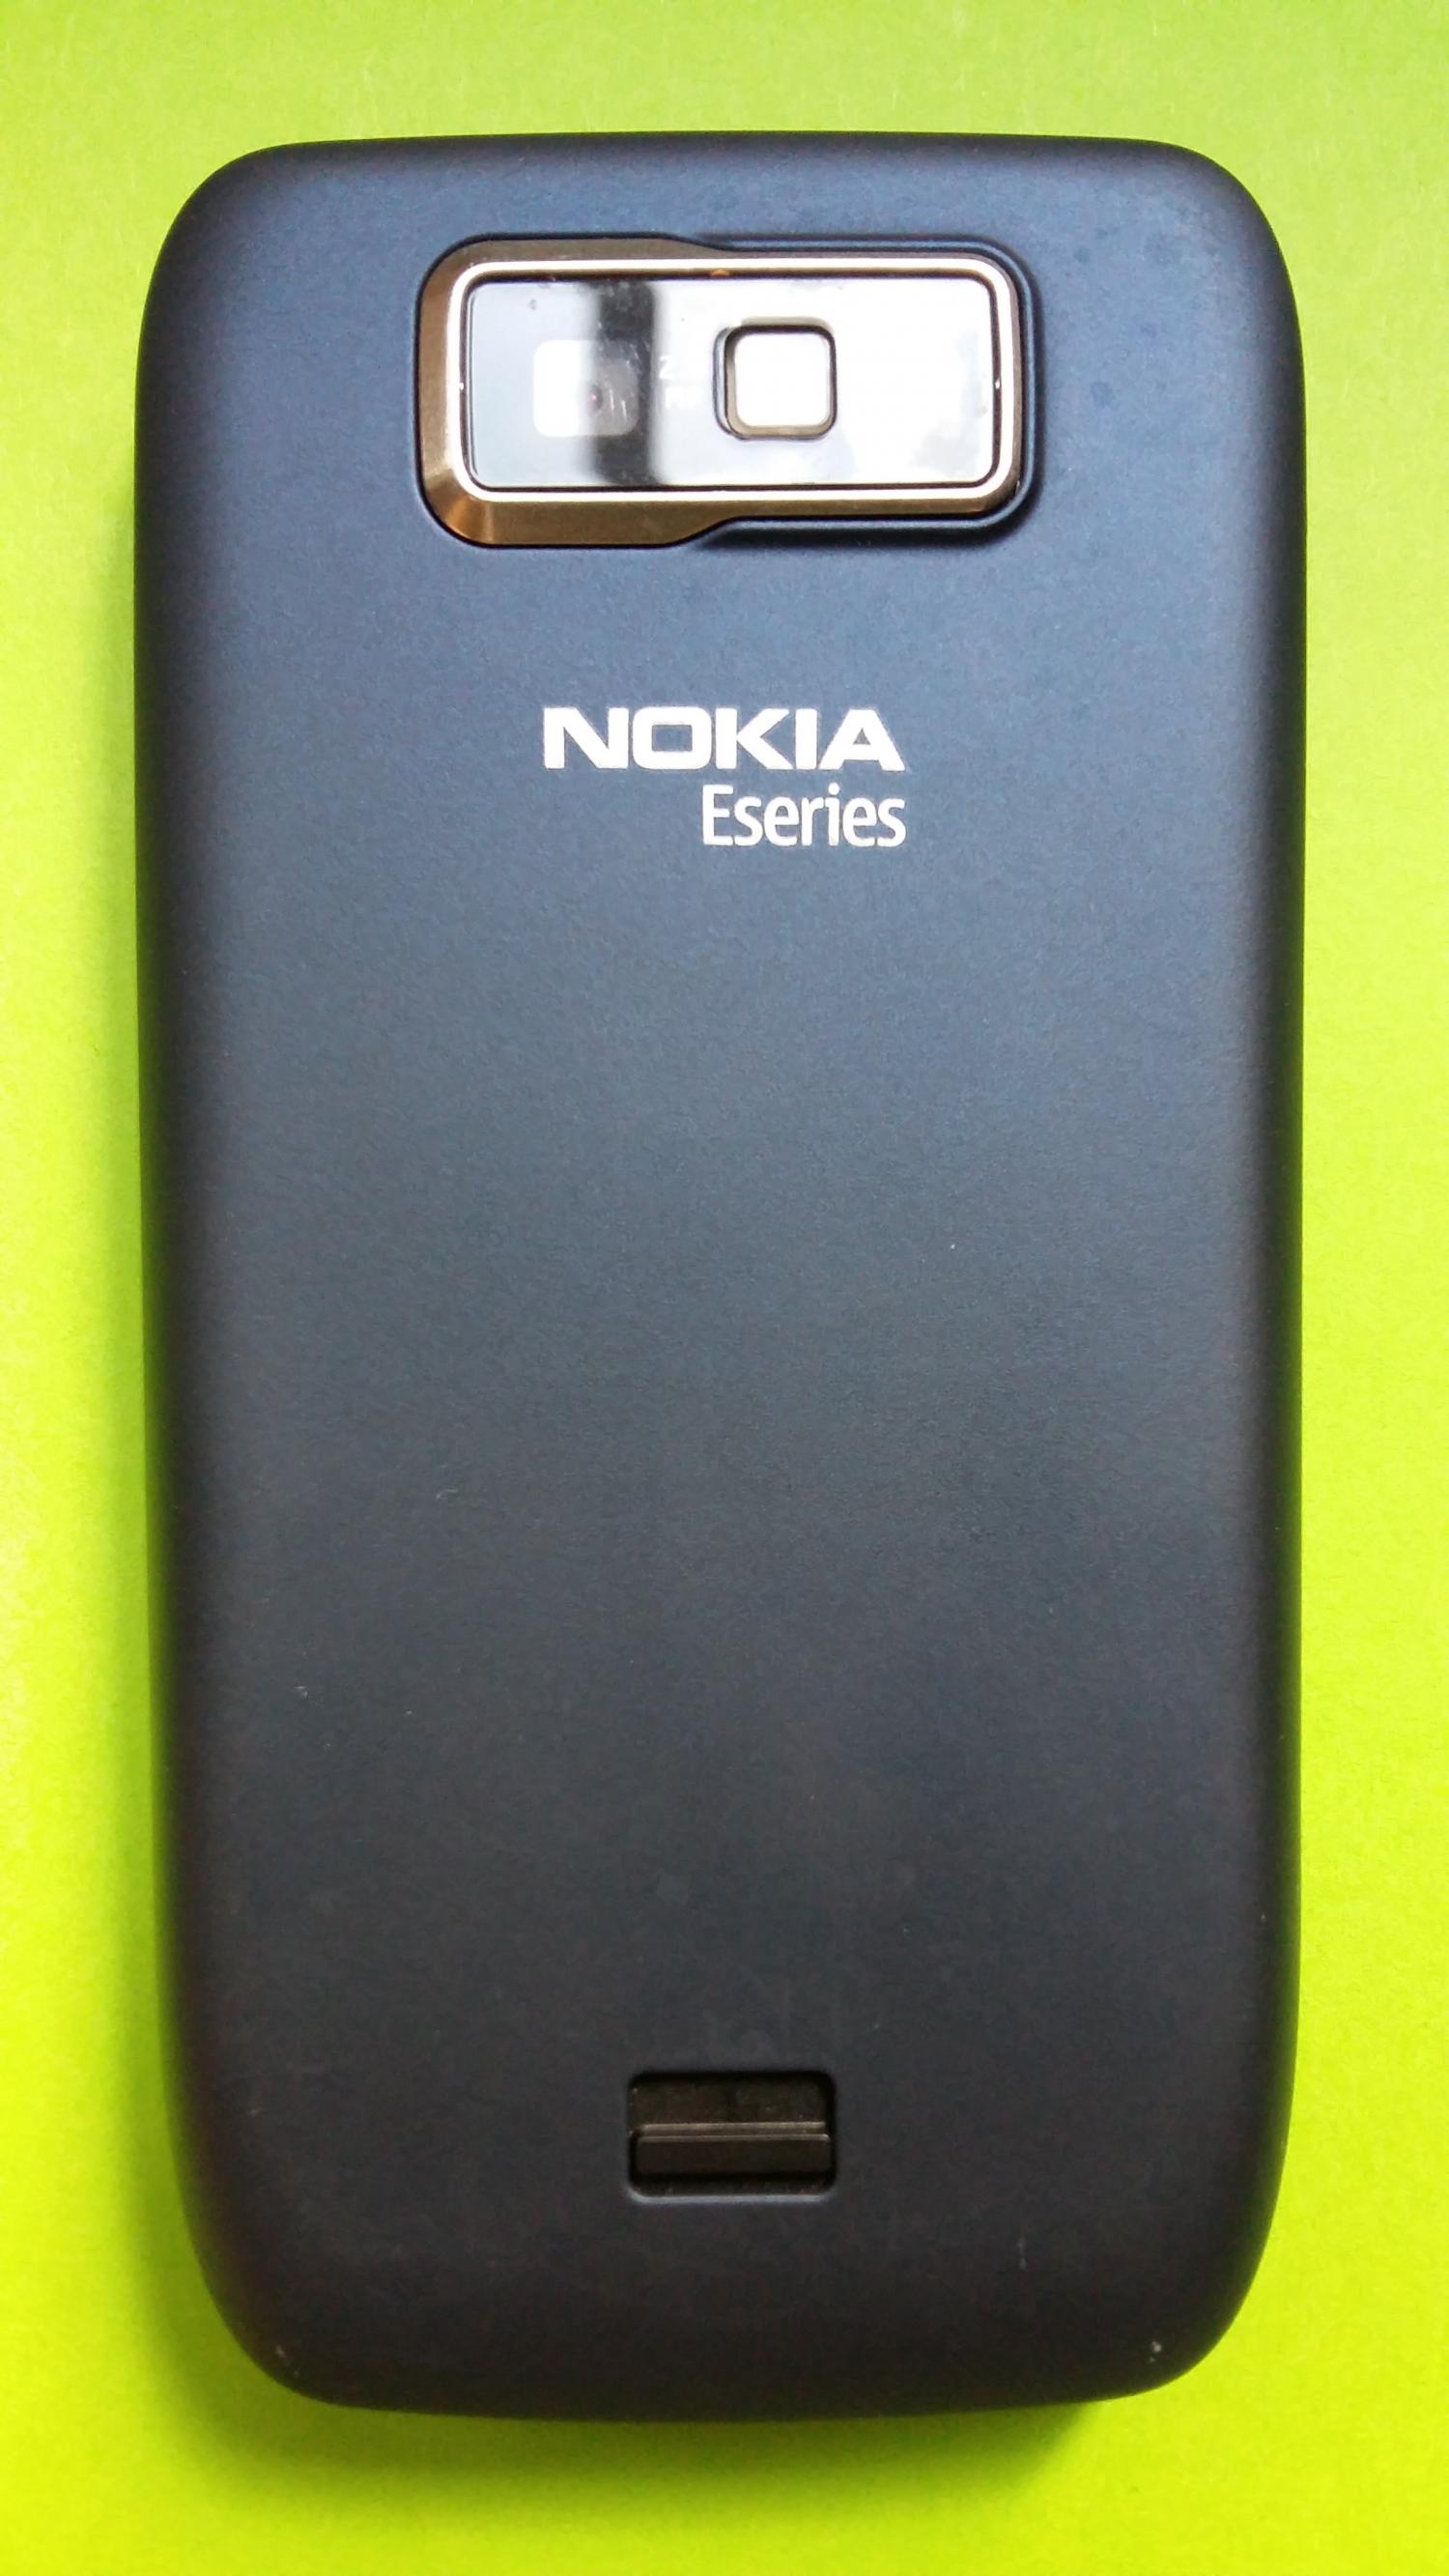 image-7339202-Nokia E63-1 (1)2.jpg